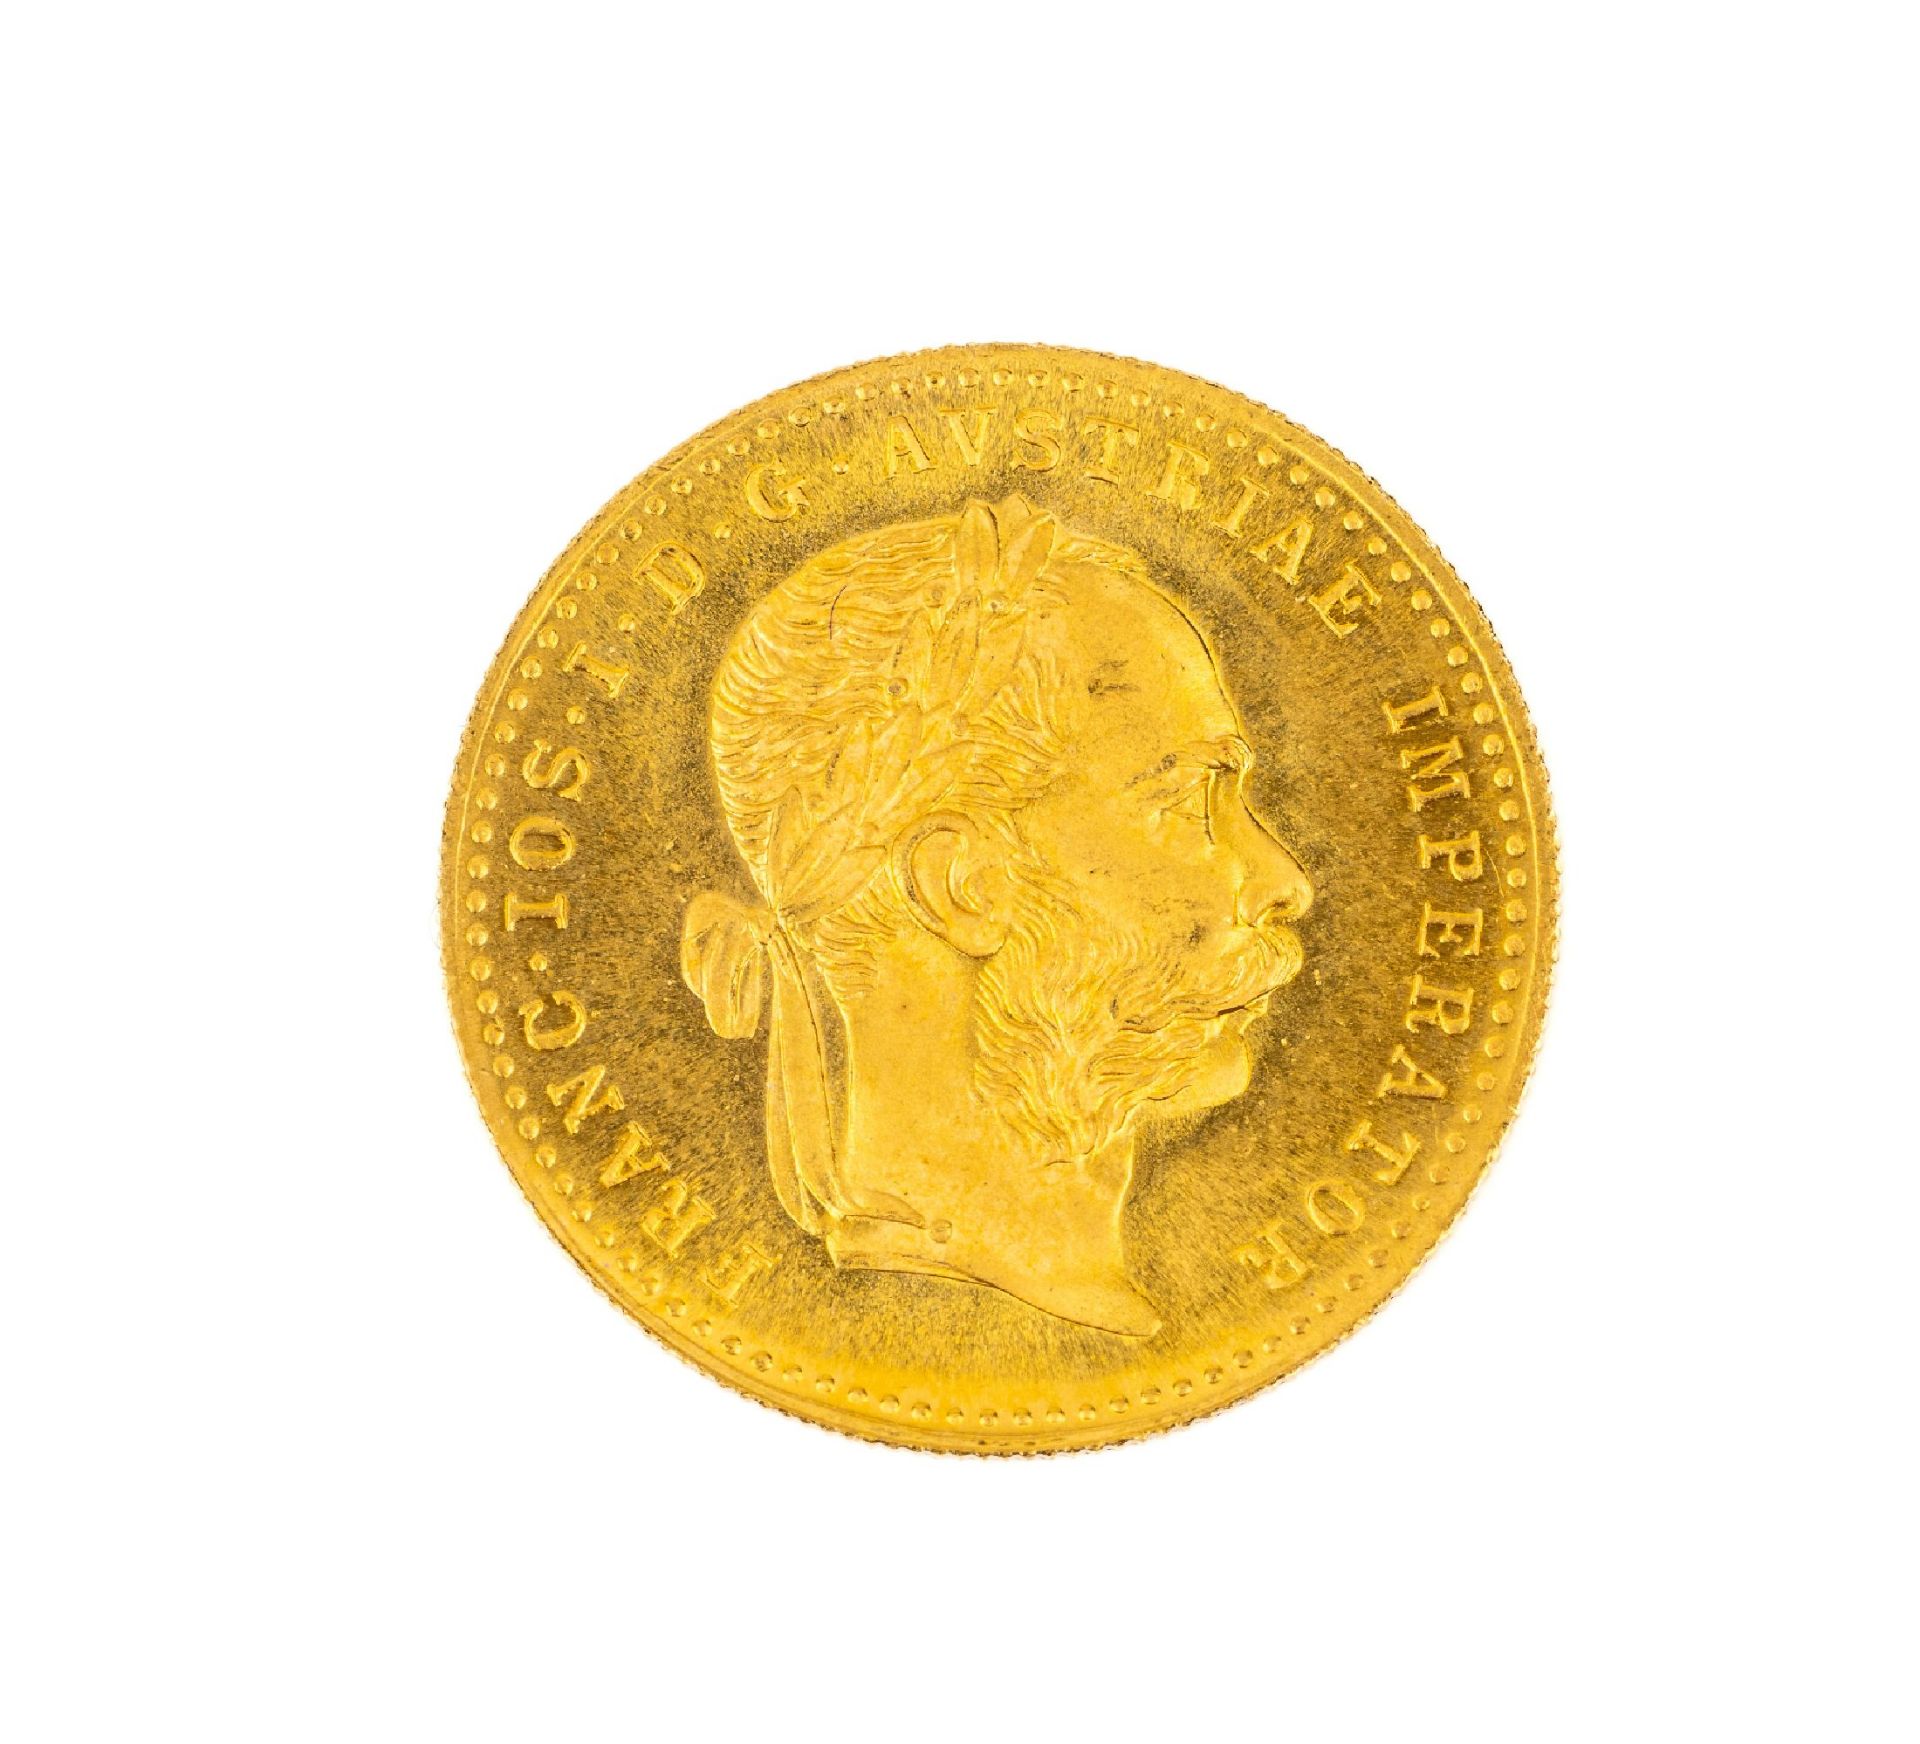 Goldmünze 1 Dukat, Österreich-Ungarn, 1915, offizielle